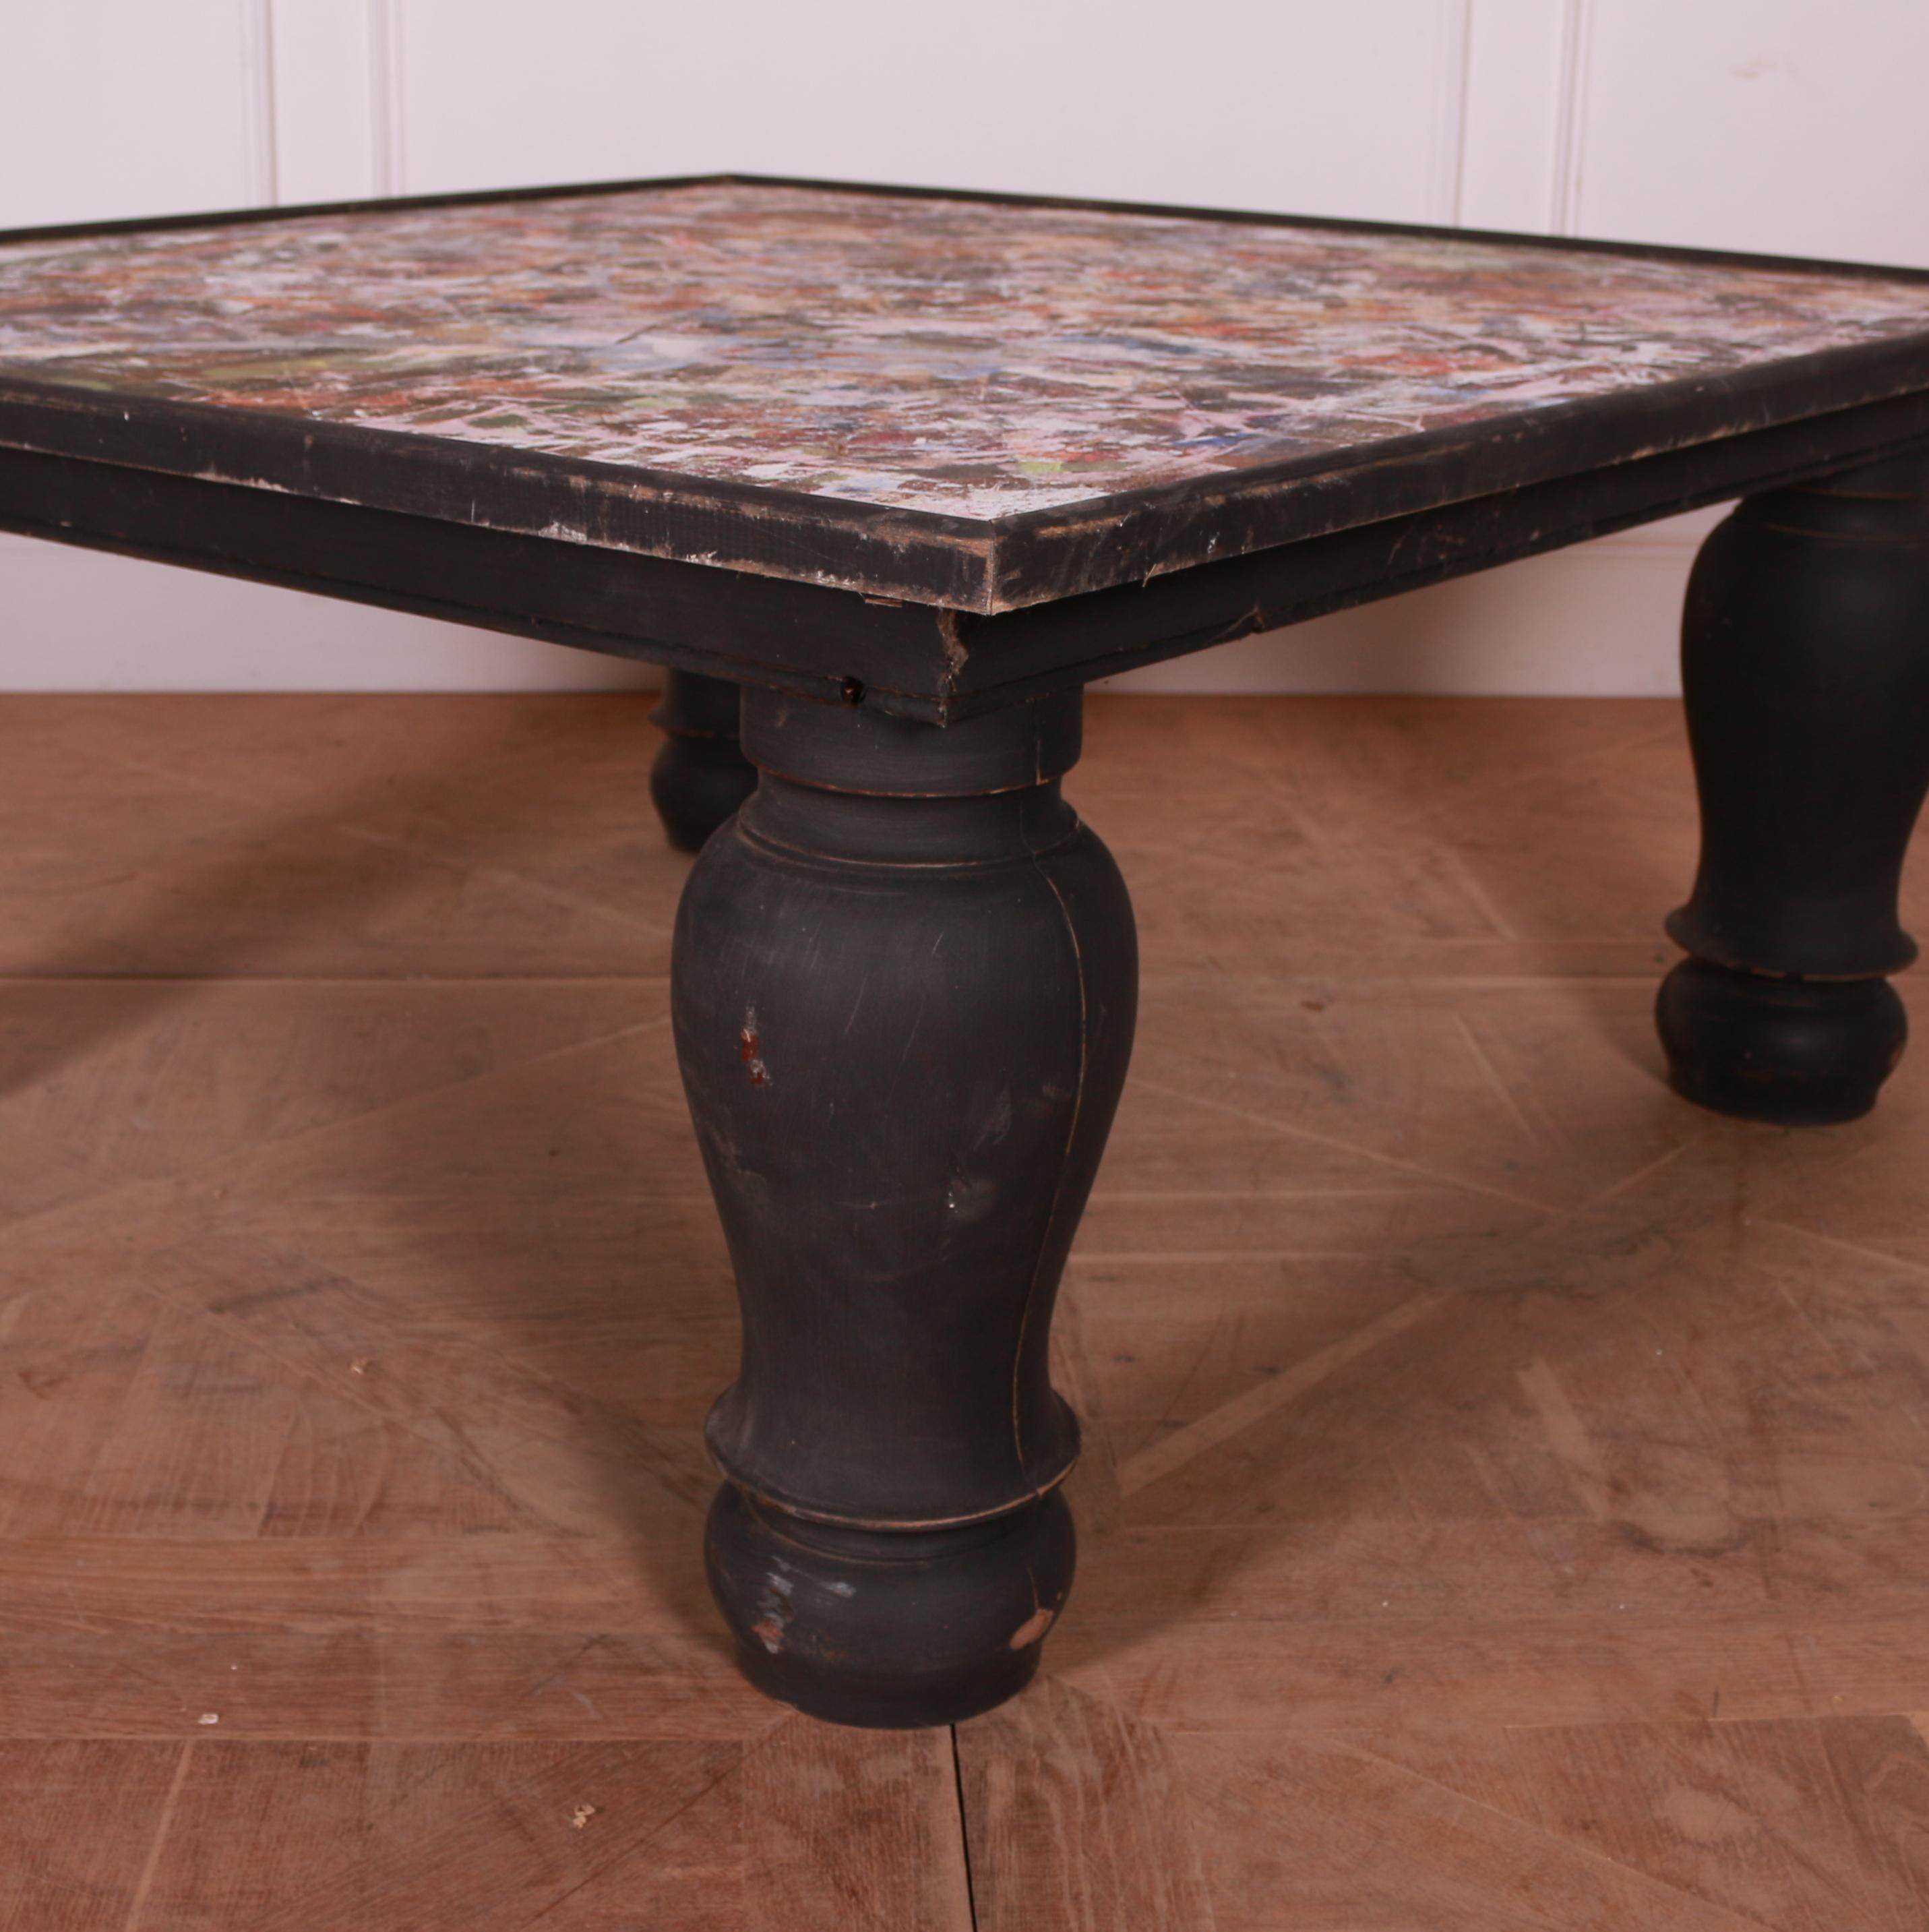 Grande table basse anglaise inhabituelle dont le plateau est peint dans une salle d'art. 1920.

Référence : 7720

Dimensions
48 pouces (122 cms) de large
48 pouces (122 cms) de profondeur
22 pouces (56 cms) de hauteur